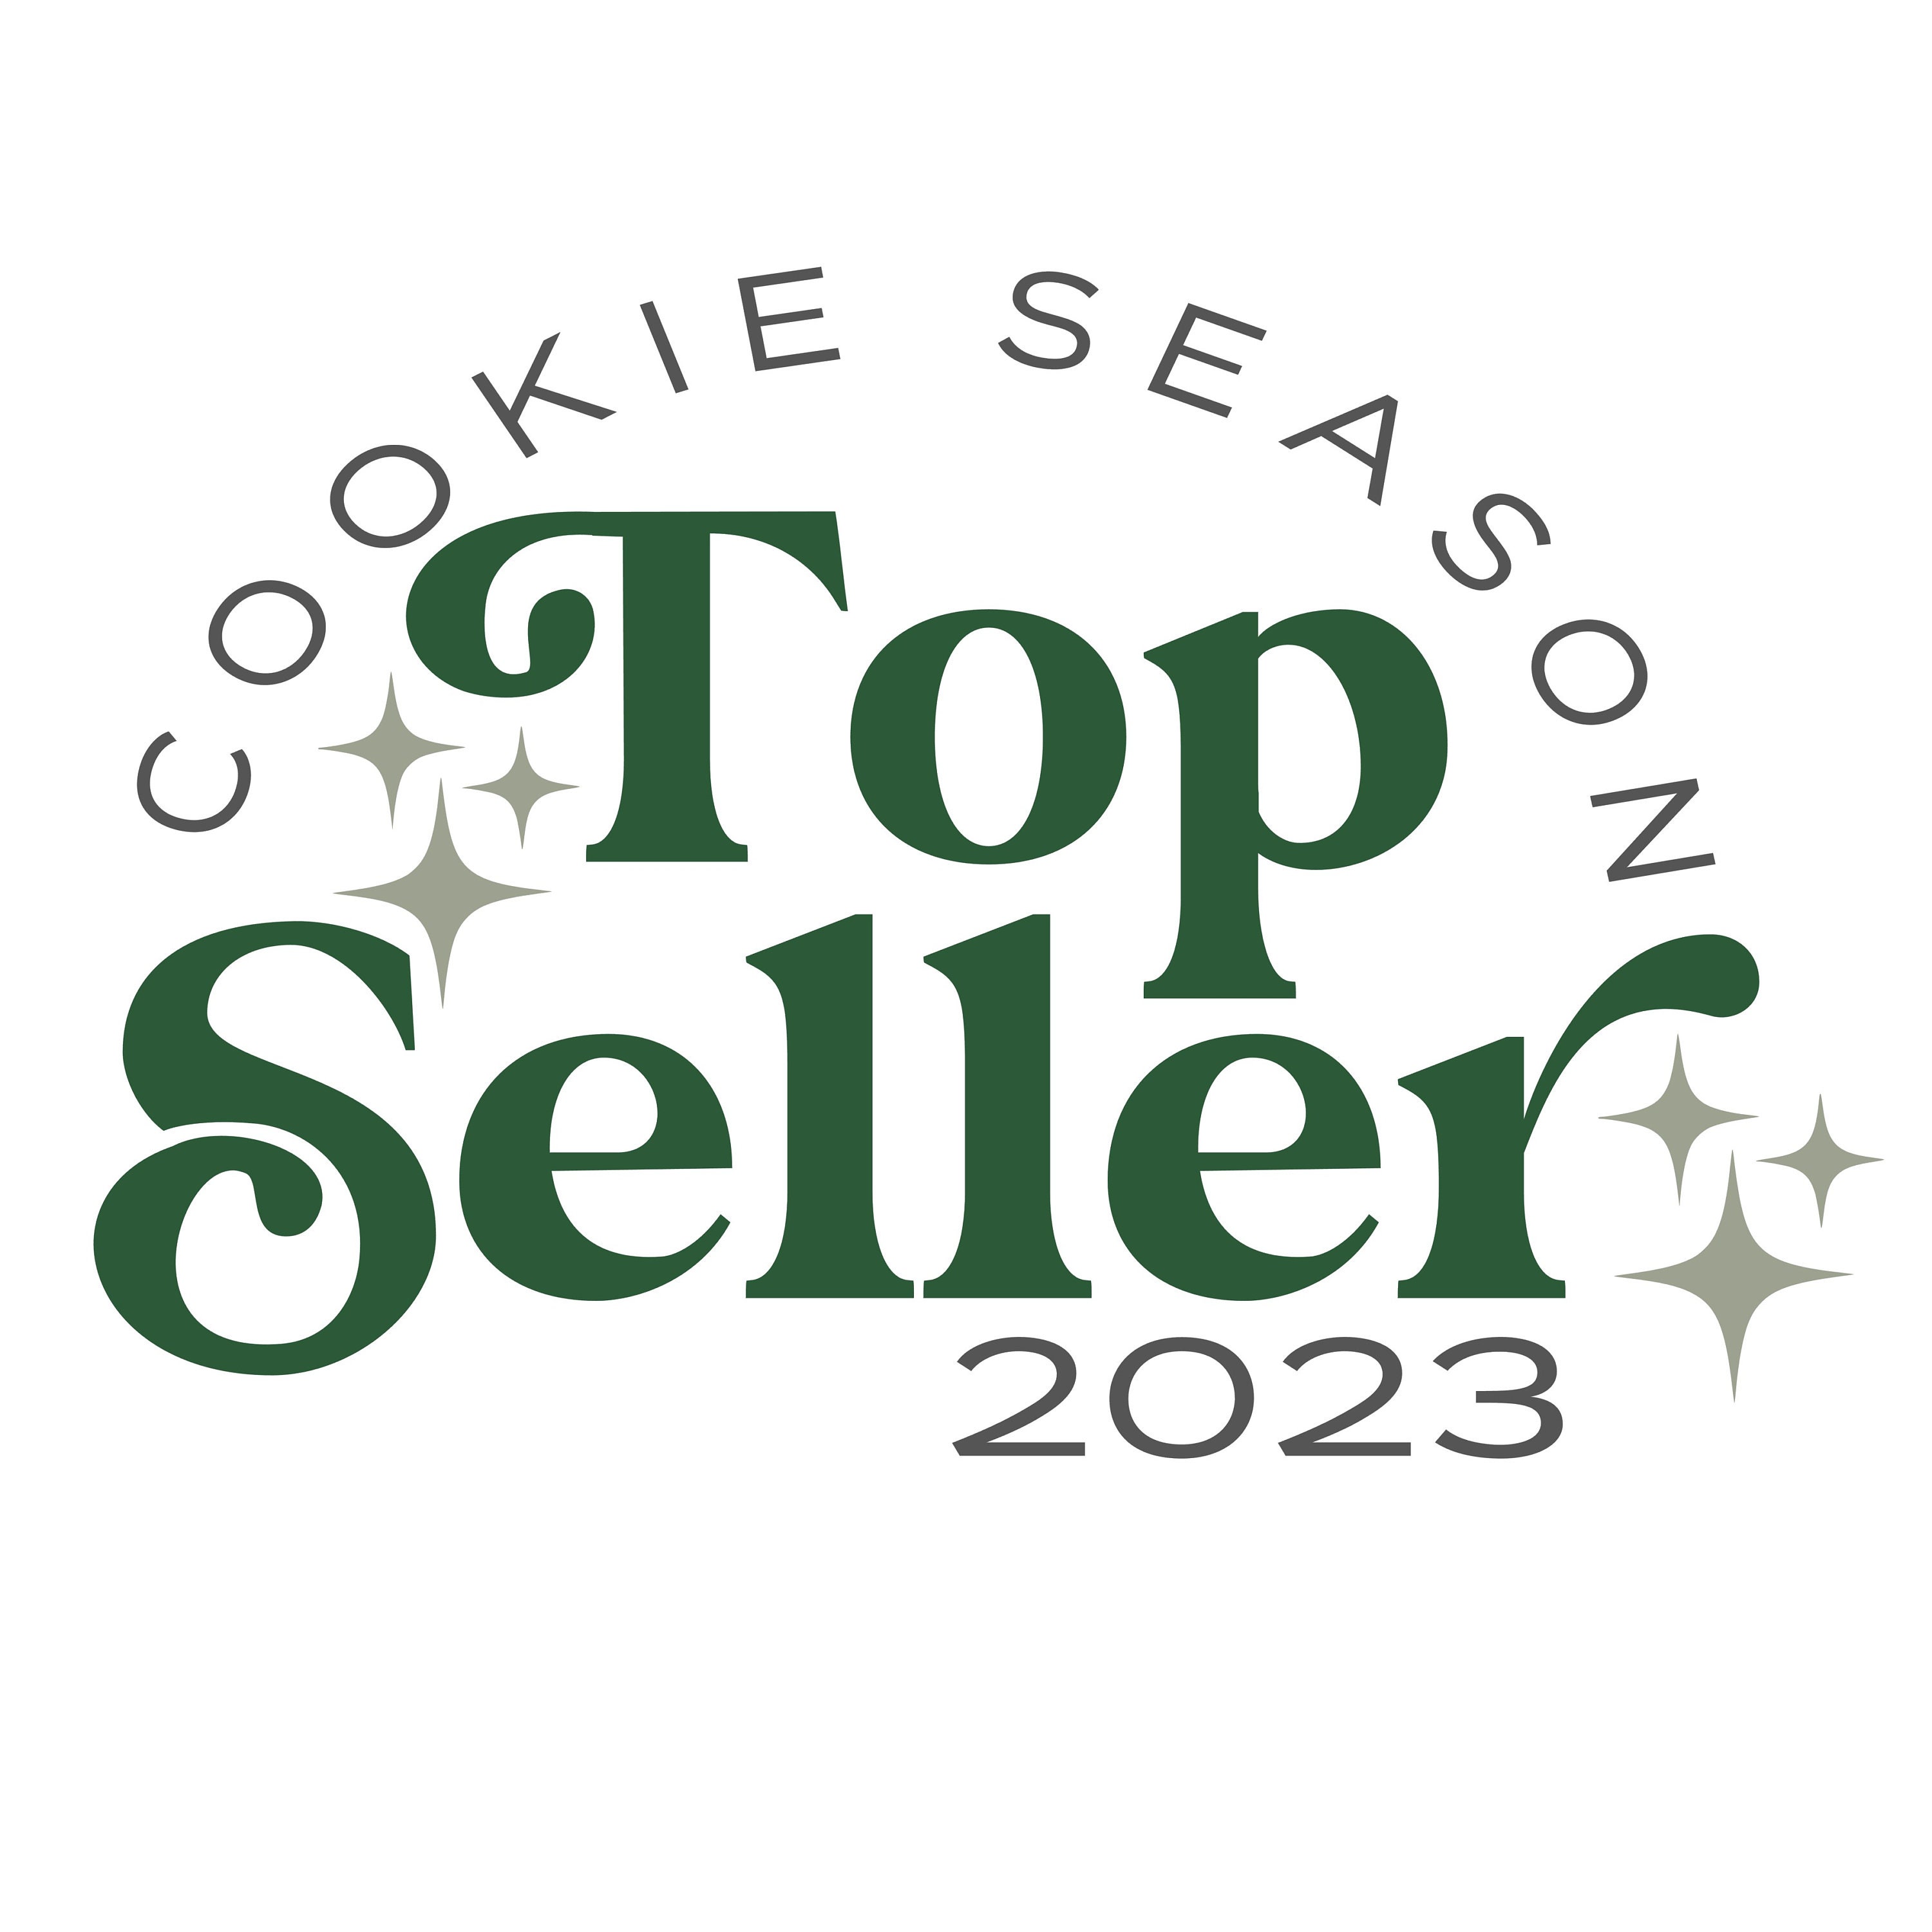 Top Sellers 2023 